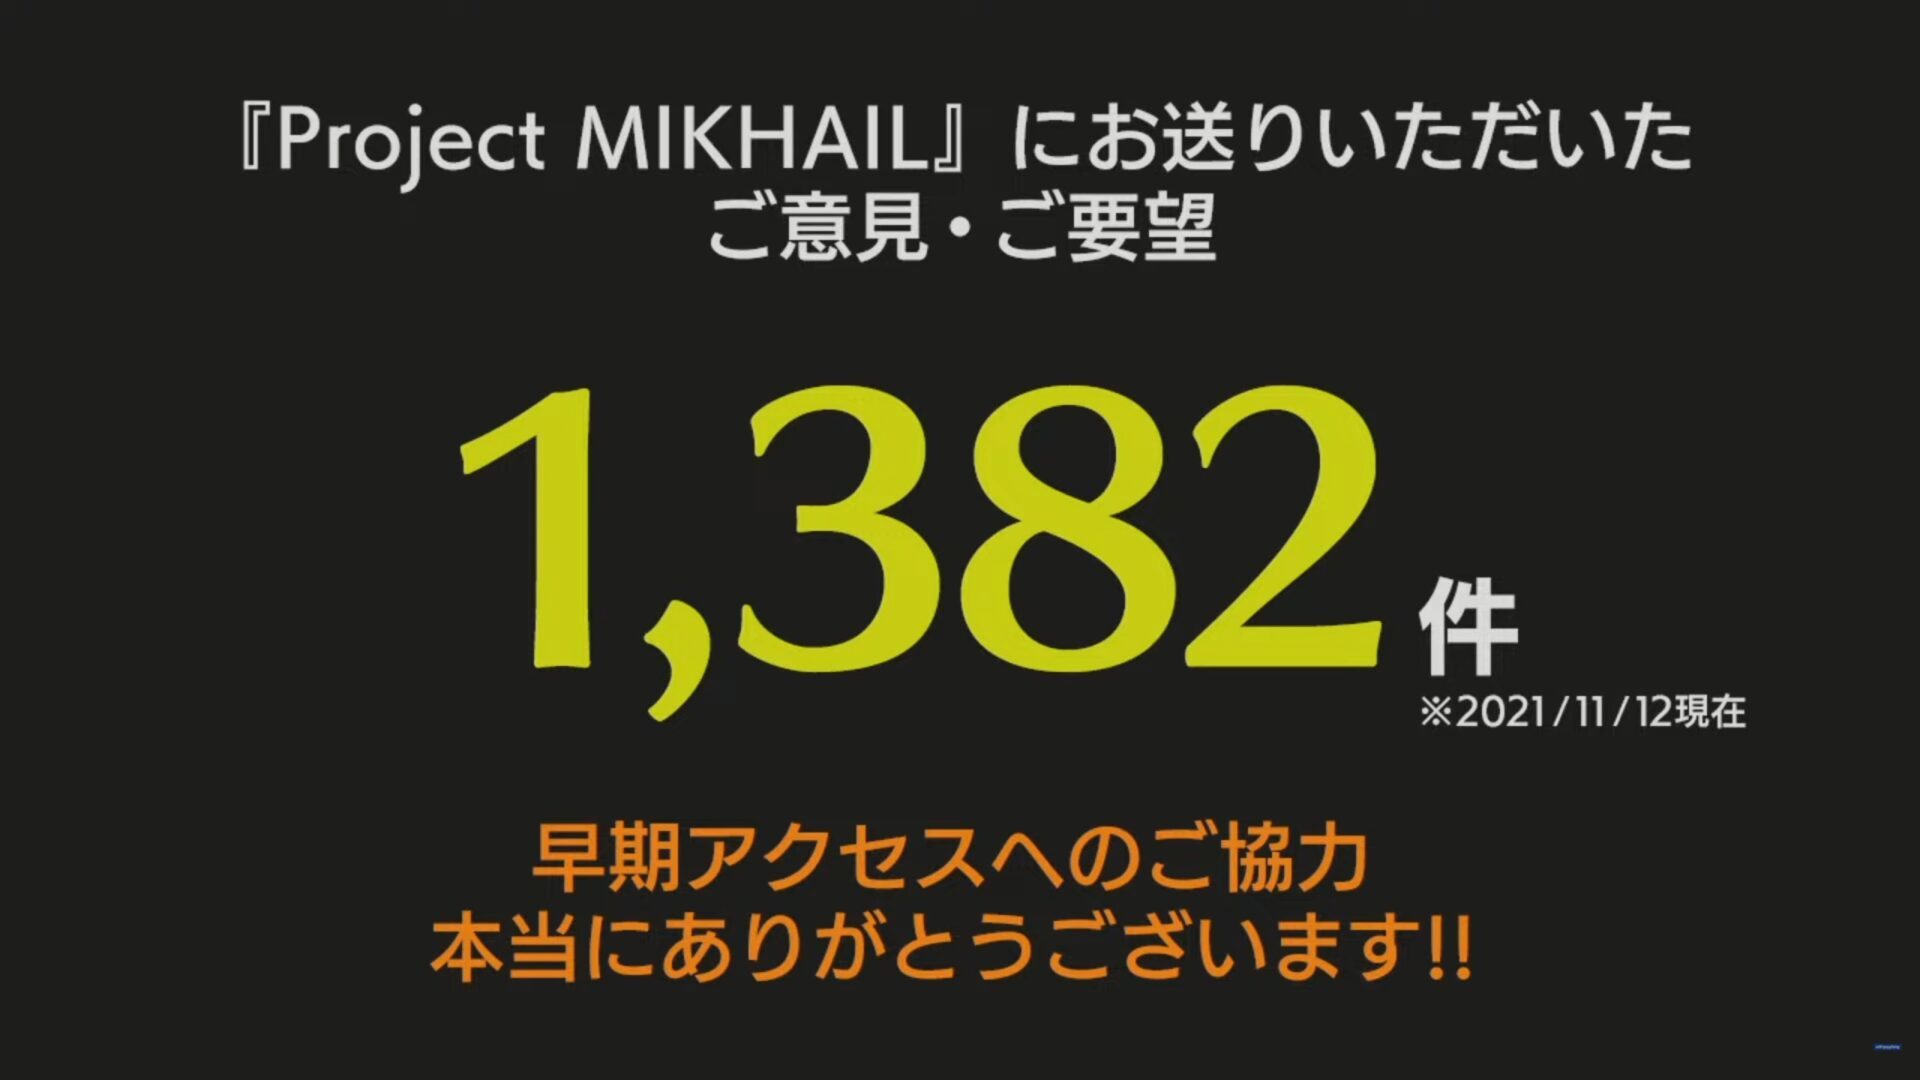 project-mikhail-1-3805627